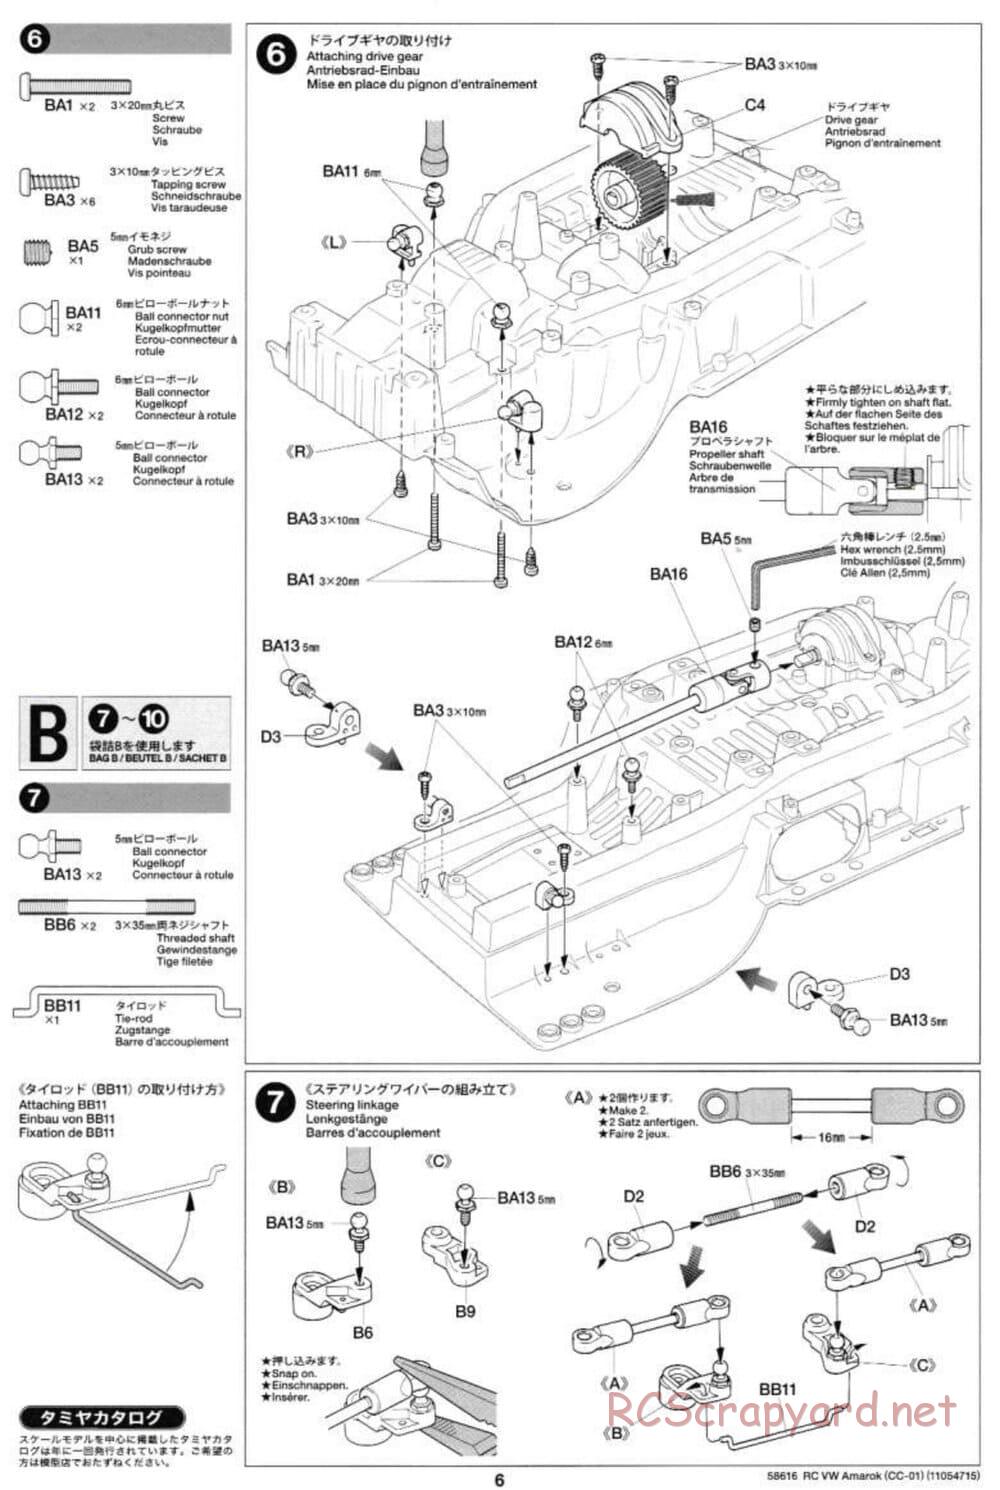 Tamiya - Volkswagen Amarok - CC-01 Chassis - Manual - Page 6